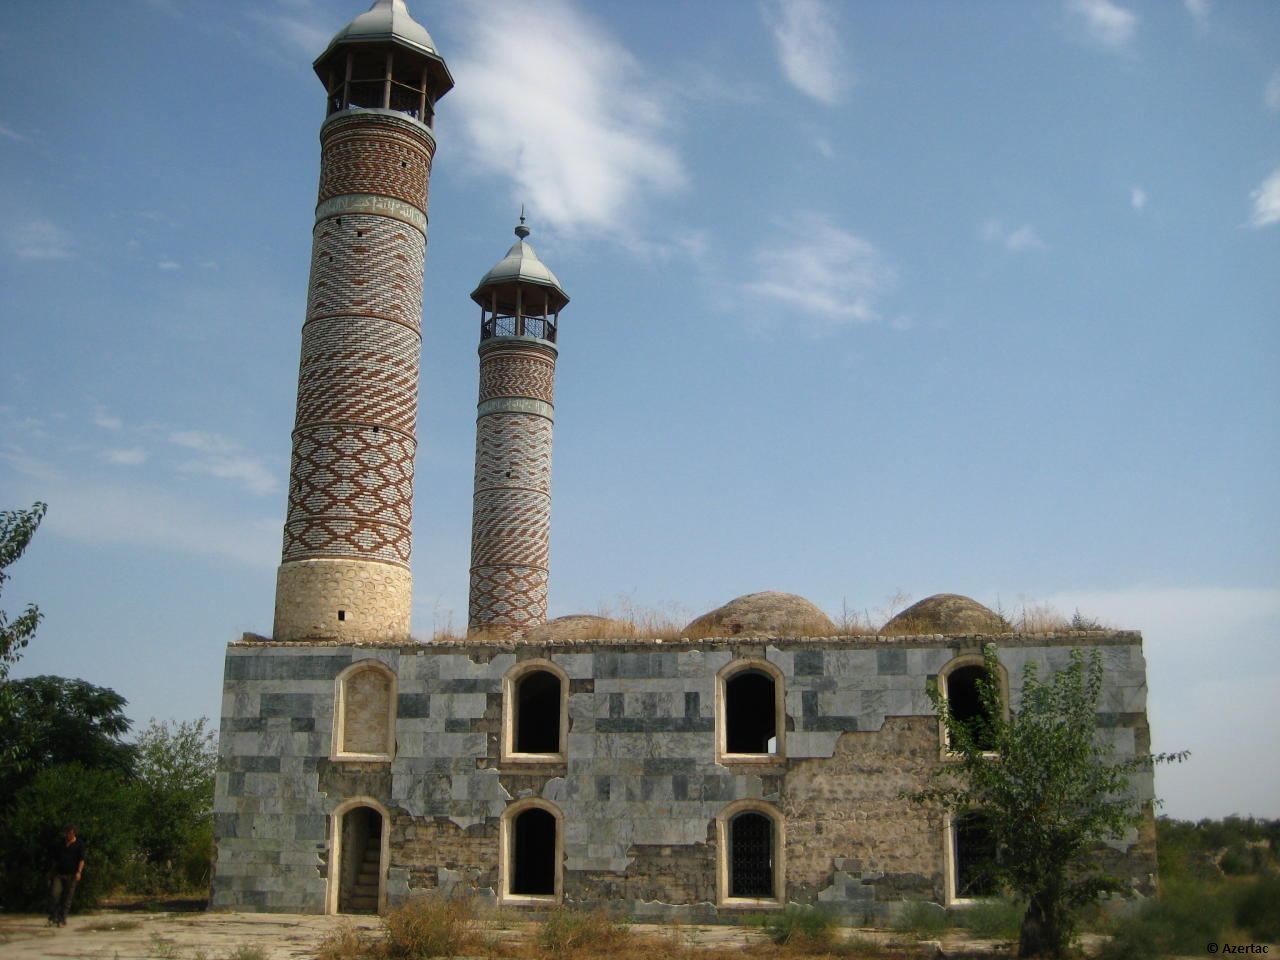 Plus de 400 monuments religieux et historiques ont été arménisés dans les territoires occupés de l'Azerbaïdjan